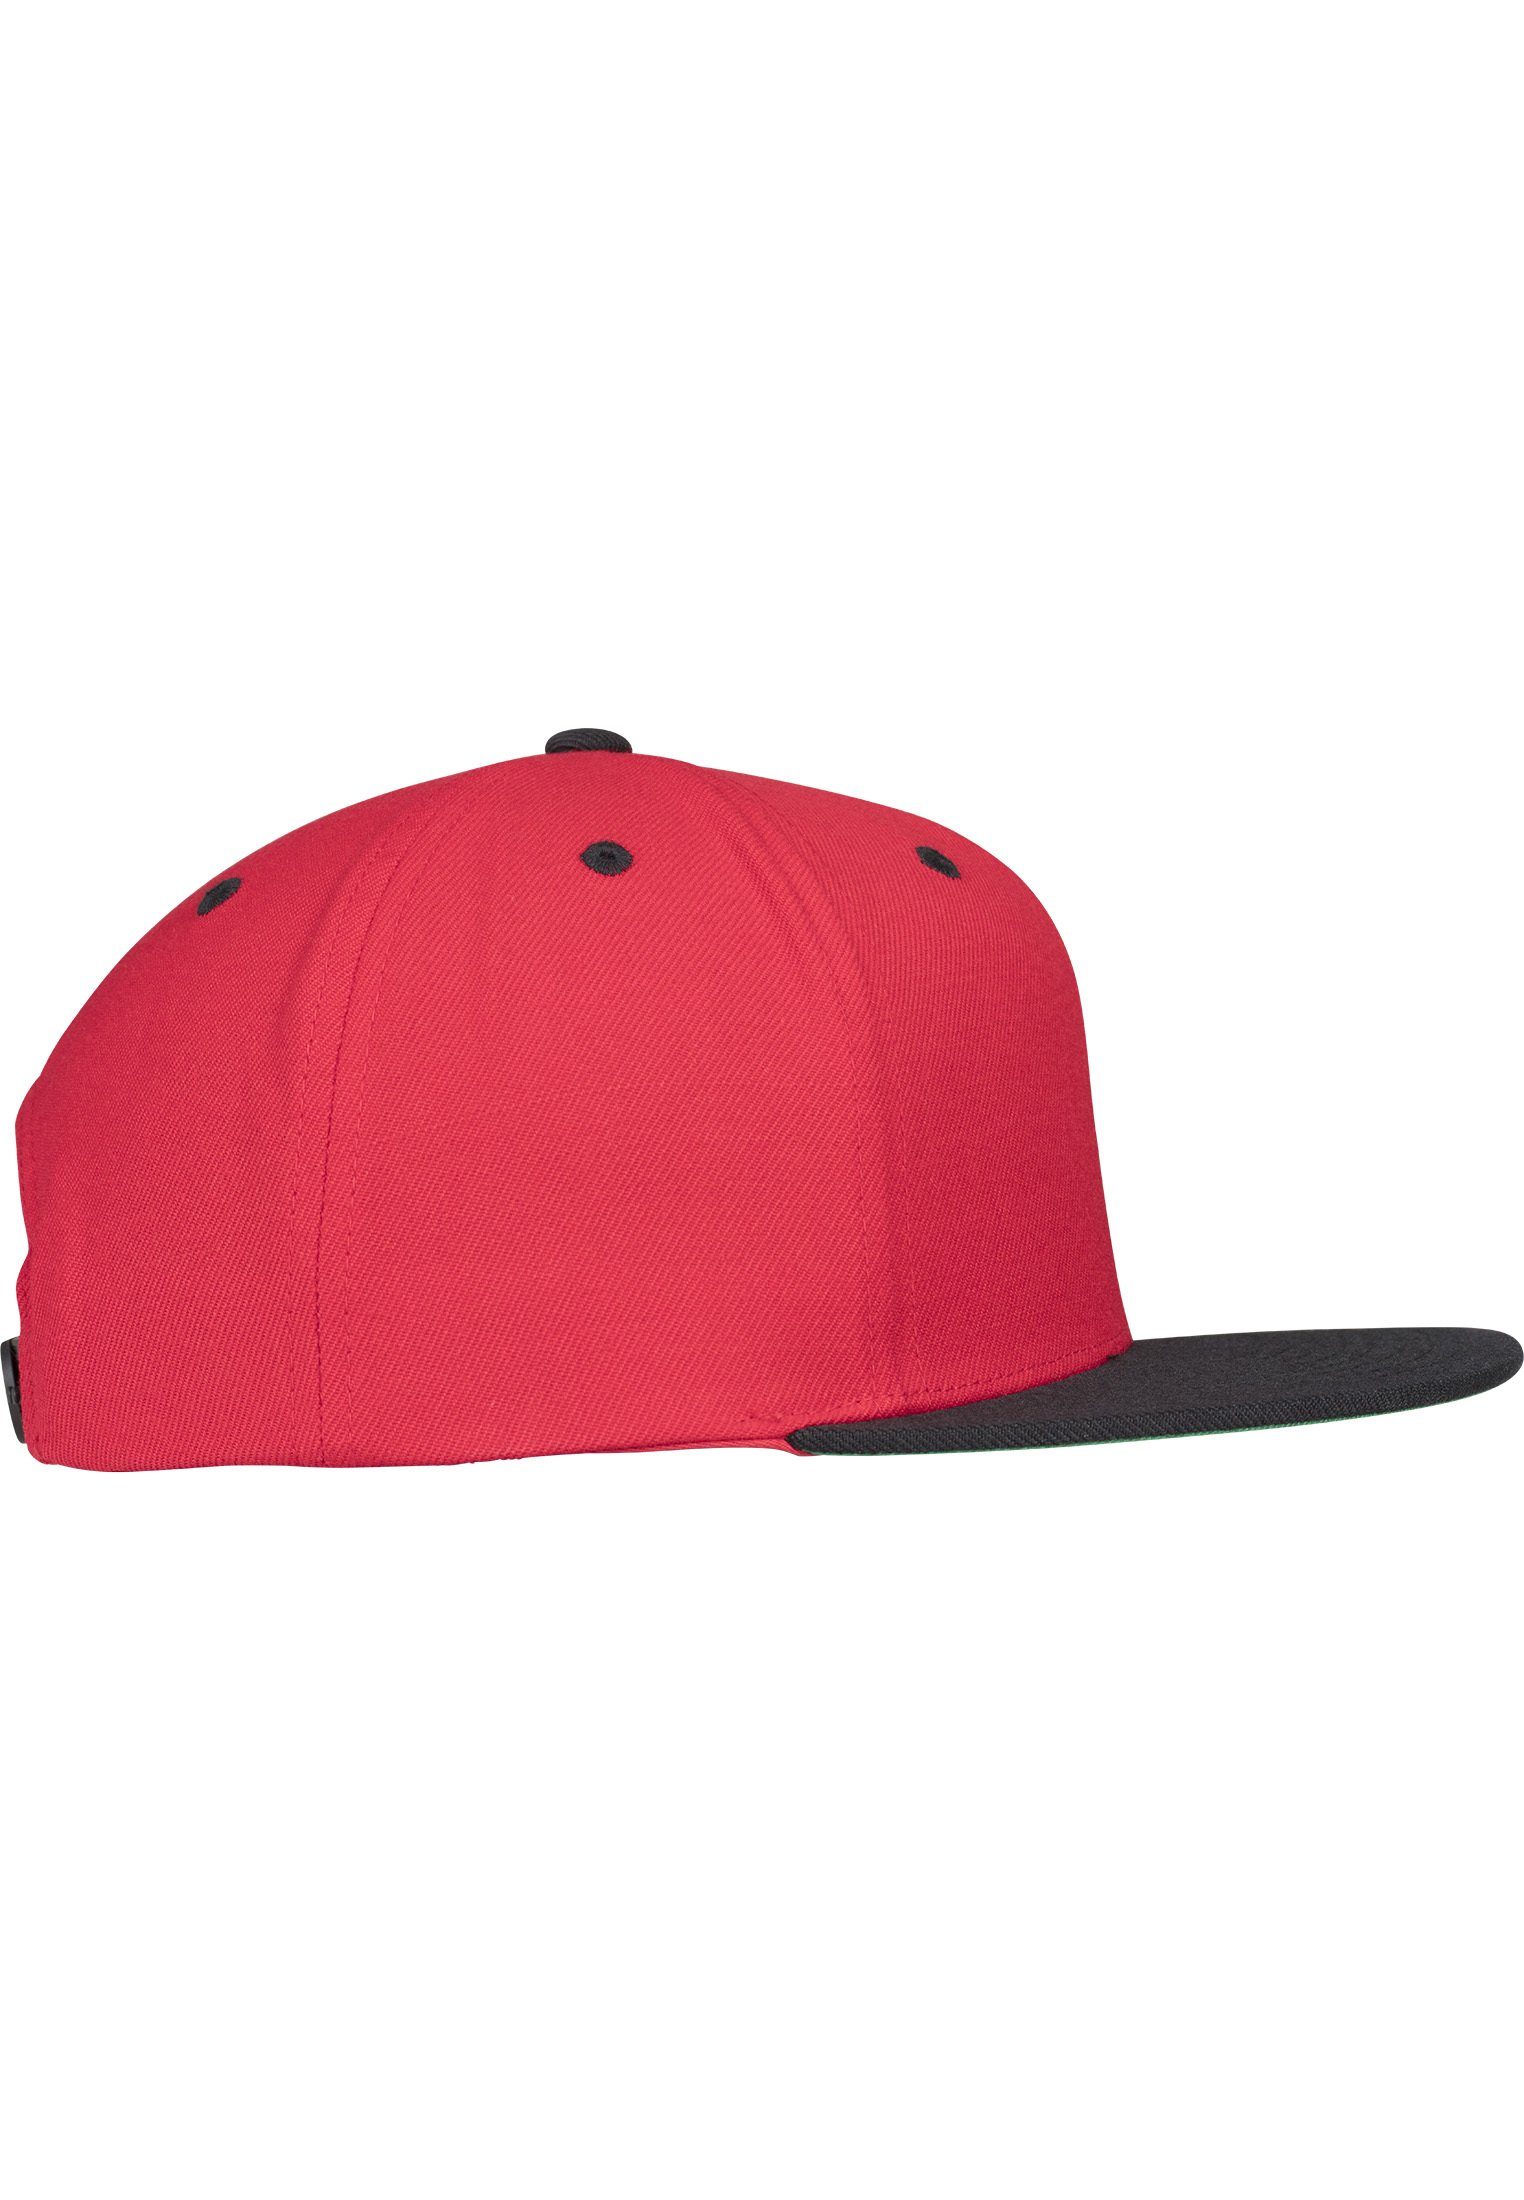 Snapback Classic red/black Snapback 2-Tone Cap Flexfit Flex